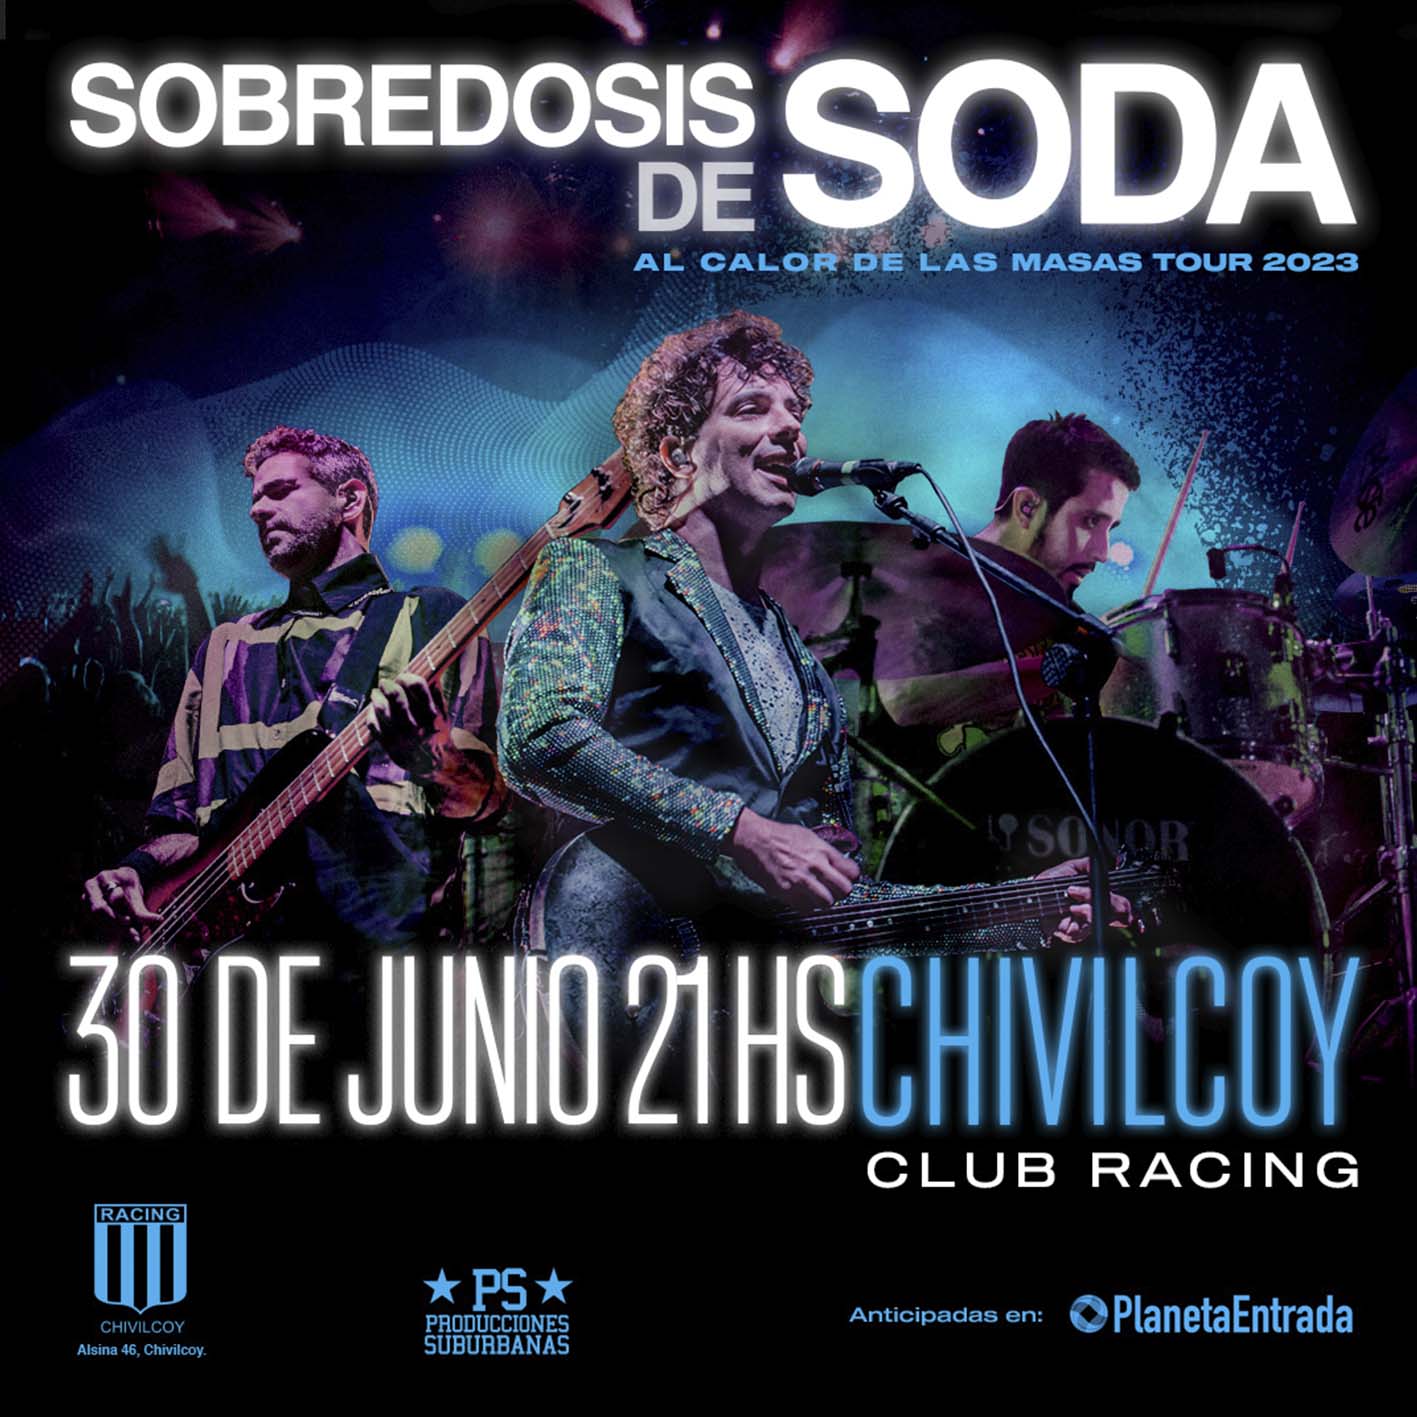 SOBREDOSIS DE SODA | 30 JUNIO | CHIVILCOY